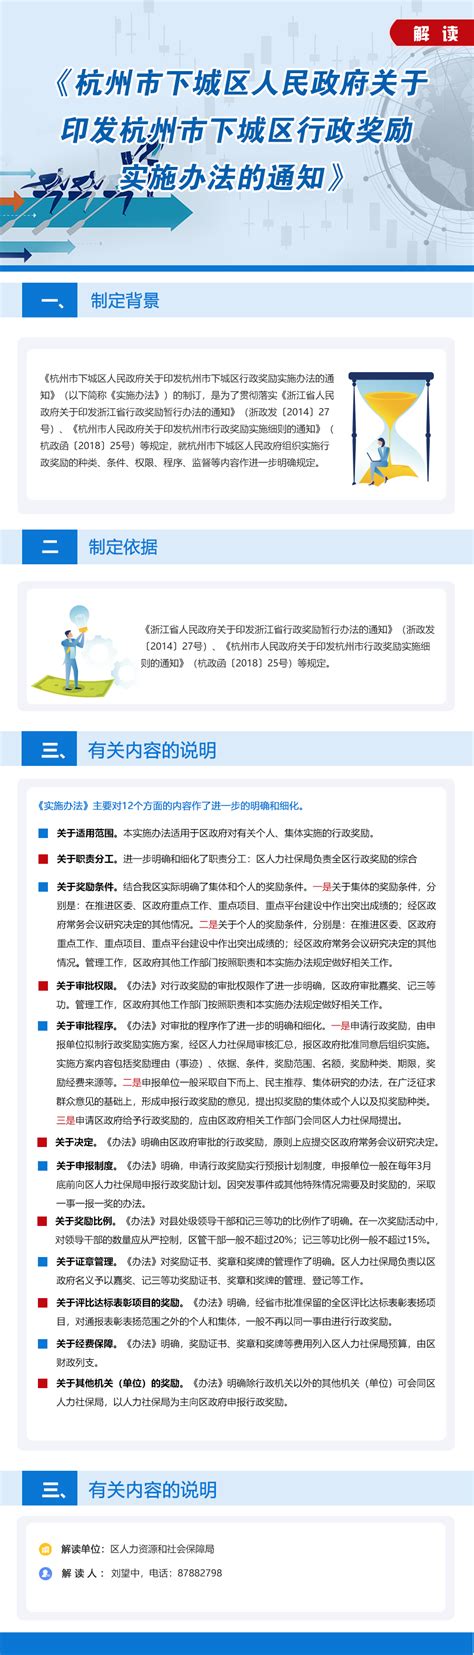 《杭州市下城区人民政府关于印发杭州市下城区行政奖励实施办法的通知》的政策解读